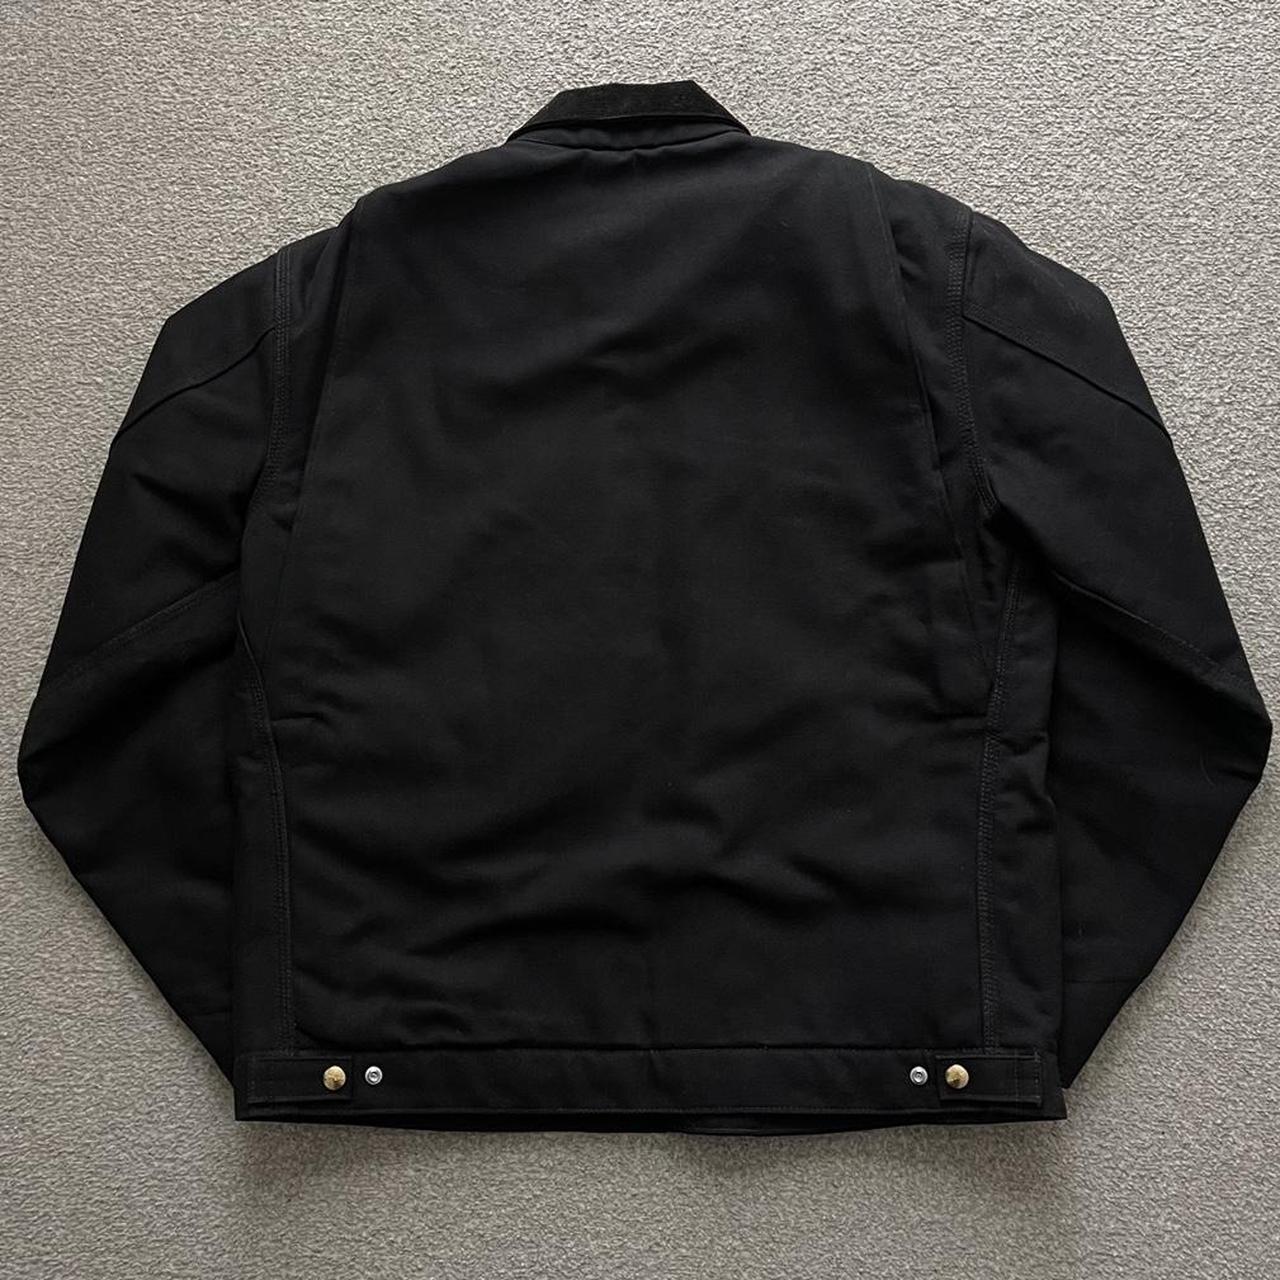 Carhartt Men's Black Jacket | Depop